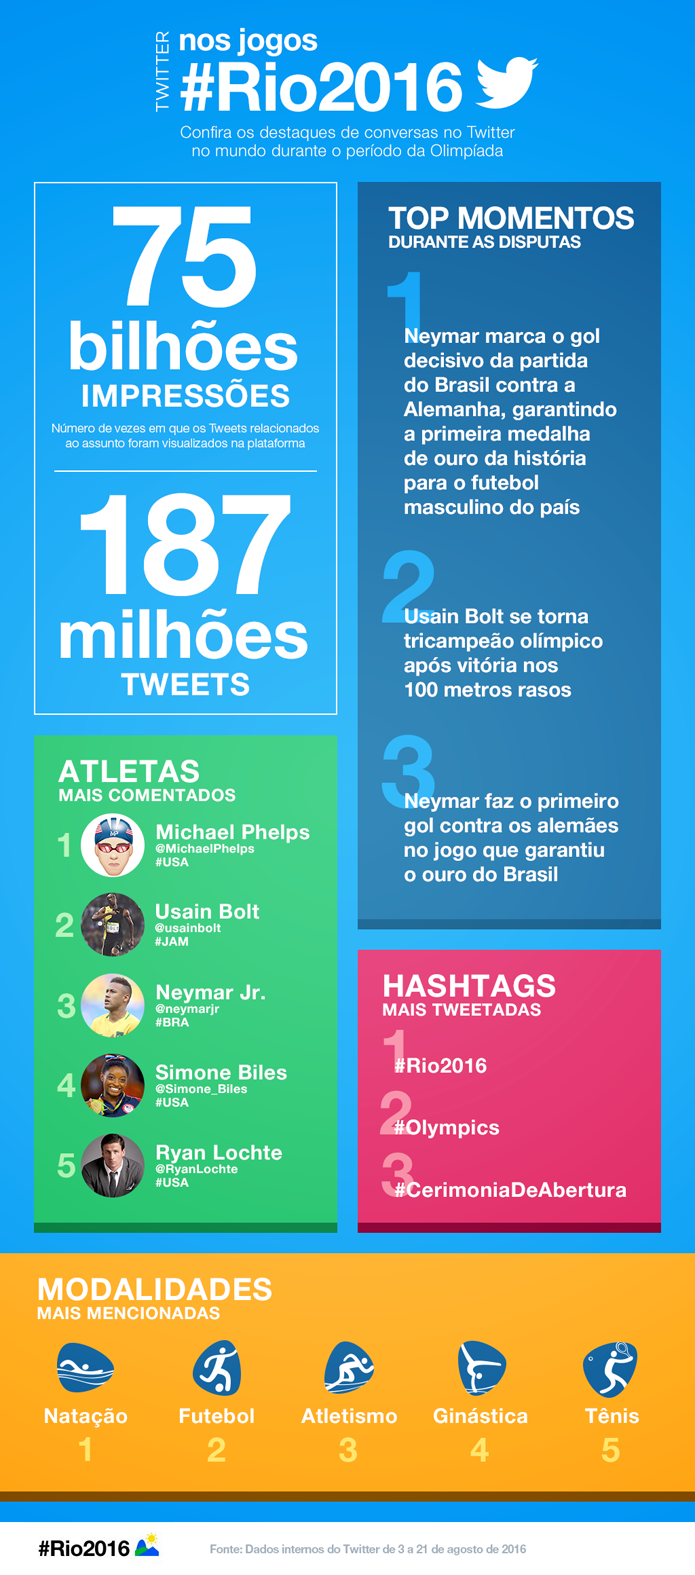 Dados do Twitter revelam assuntos mais comentados durante as Olimpíadas (Foto: Reprodução/Twitter)